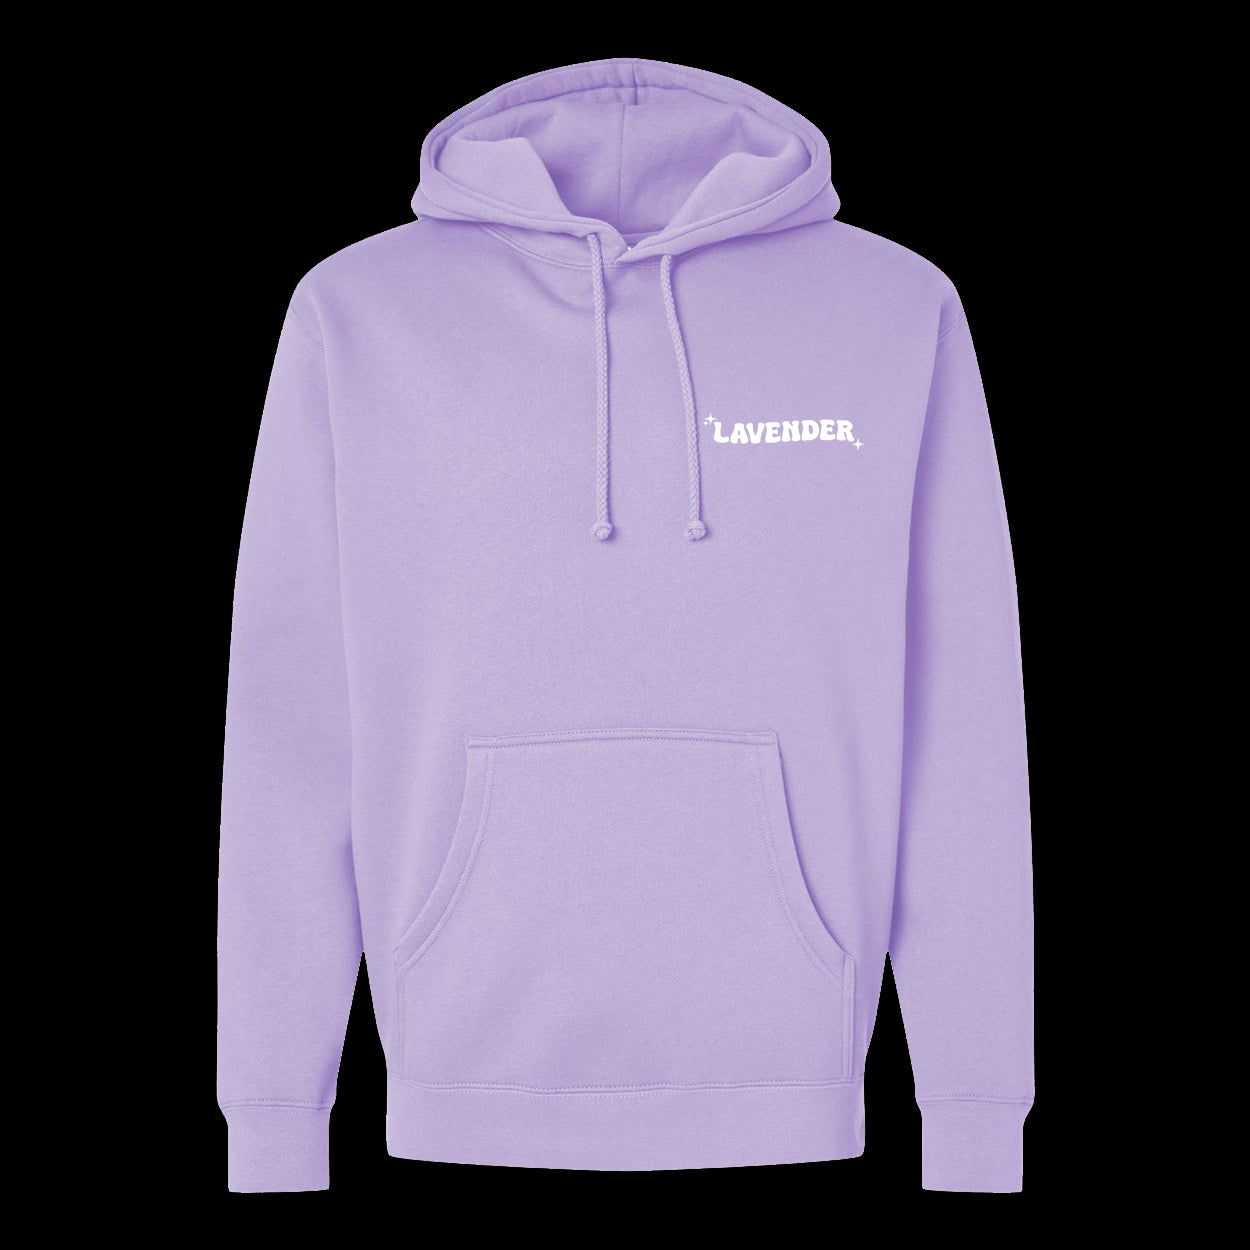 "Lavender" Lavender Pullover